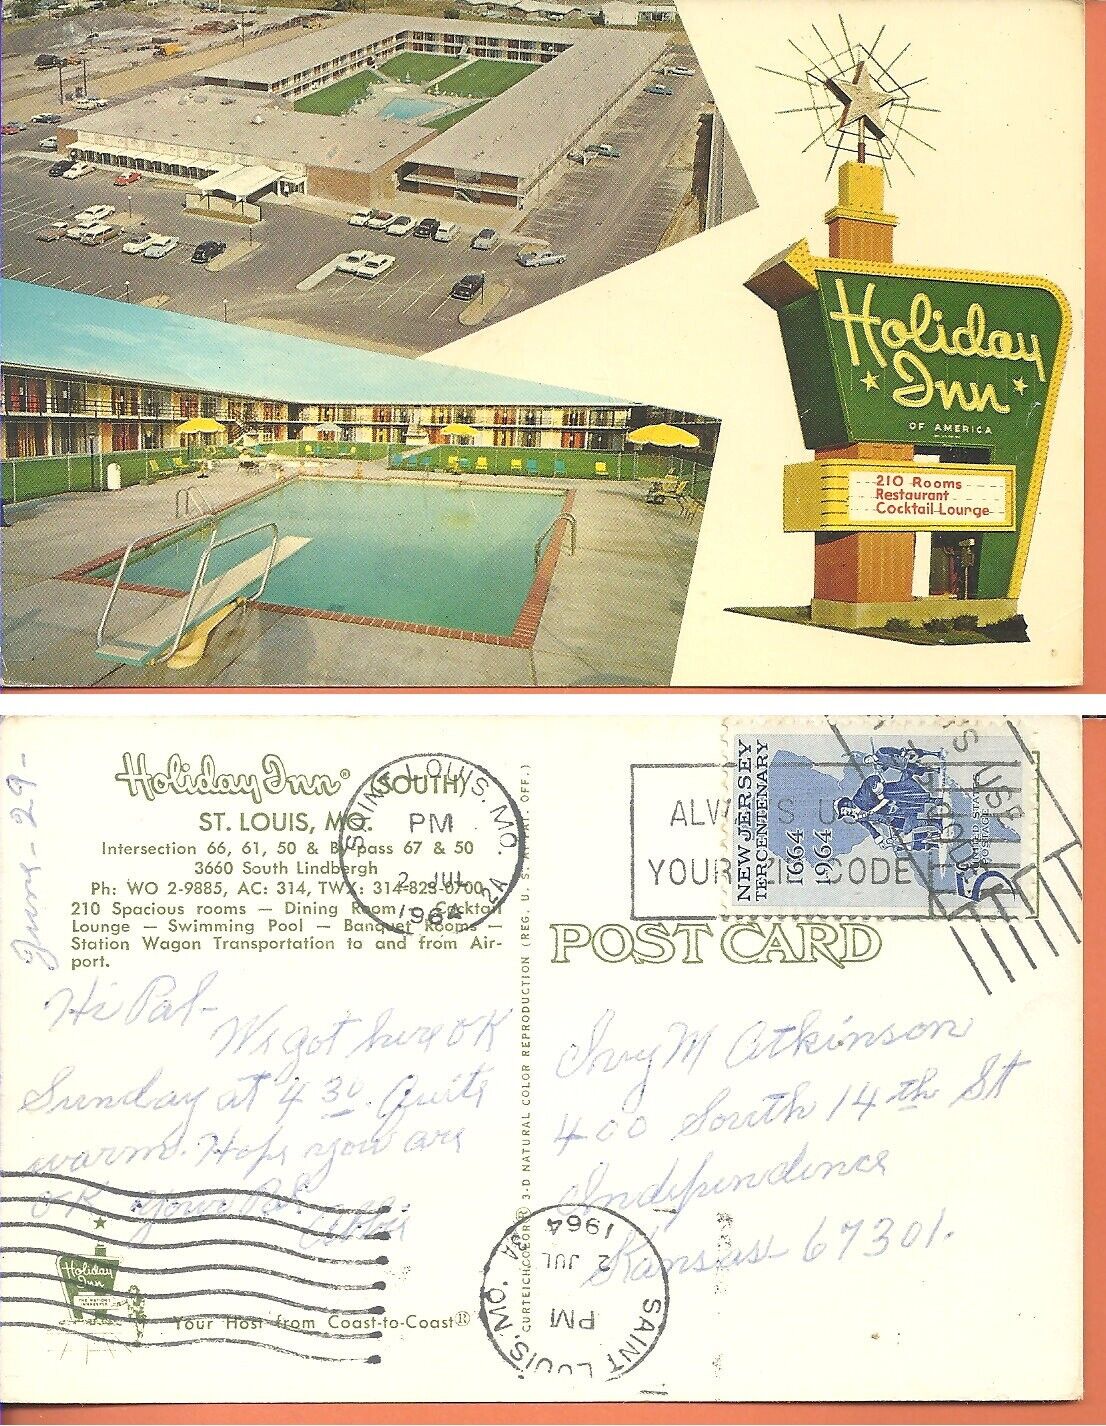 Holiday Inn, St. Louis, Mo. 1964